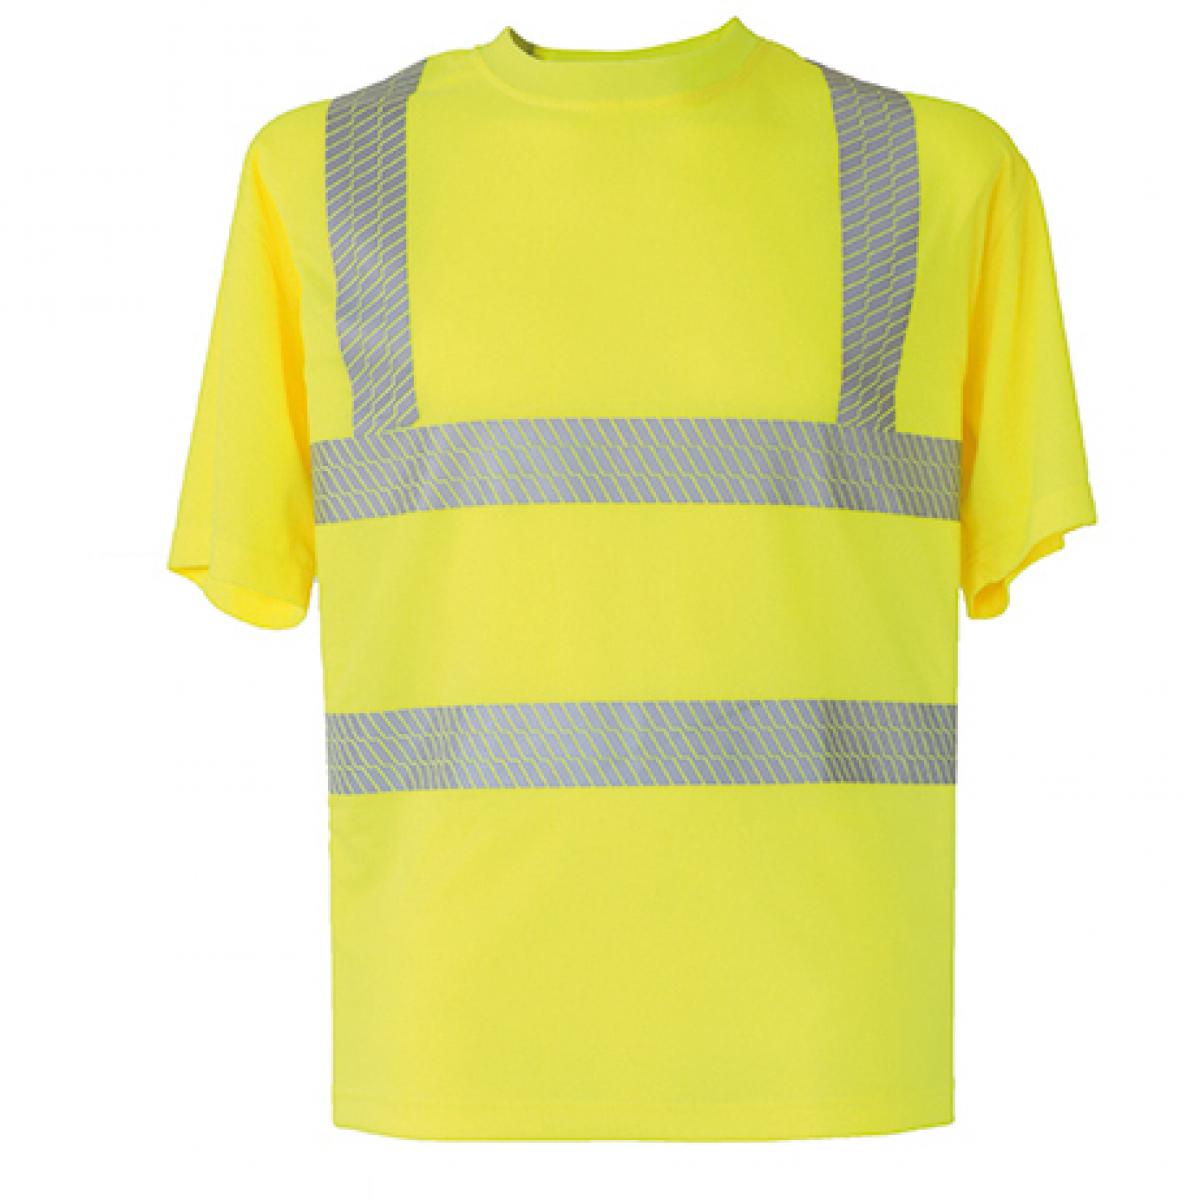 Hersteller: Korntex Herstellernummer: KXBRS Artikelbezeichnung: Herren Hi-Viz Broken Reflective Arbeits T-Shirt EN ISO 20471 Farbe: Signal Yellow